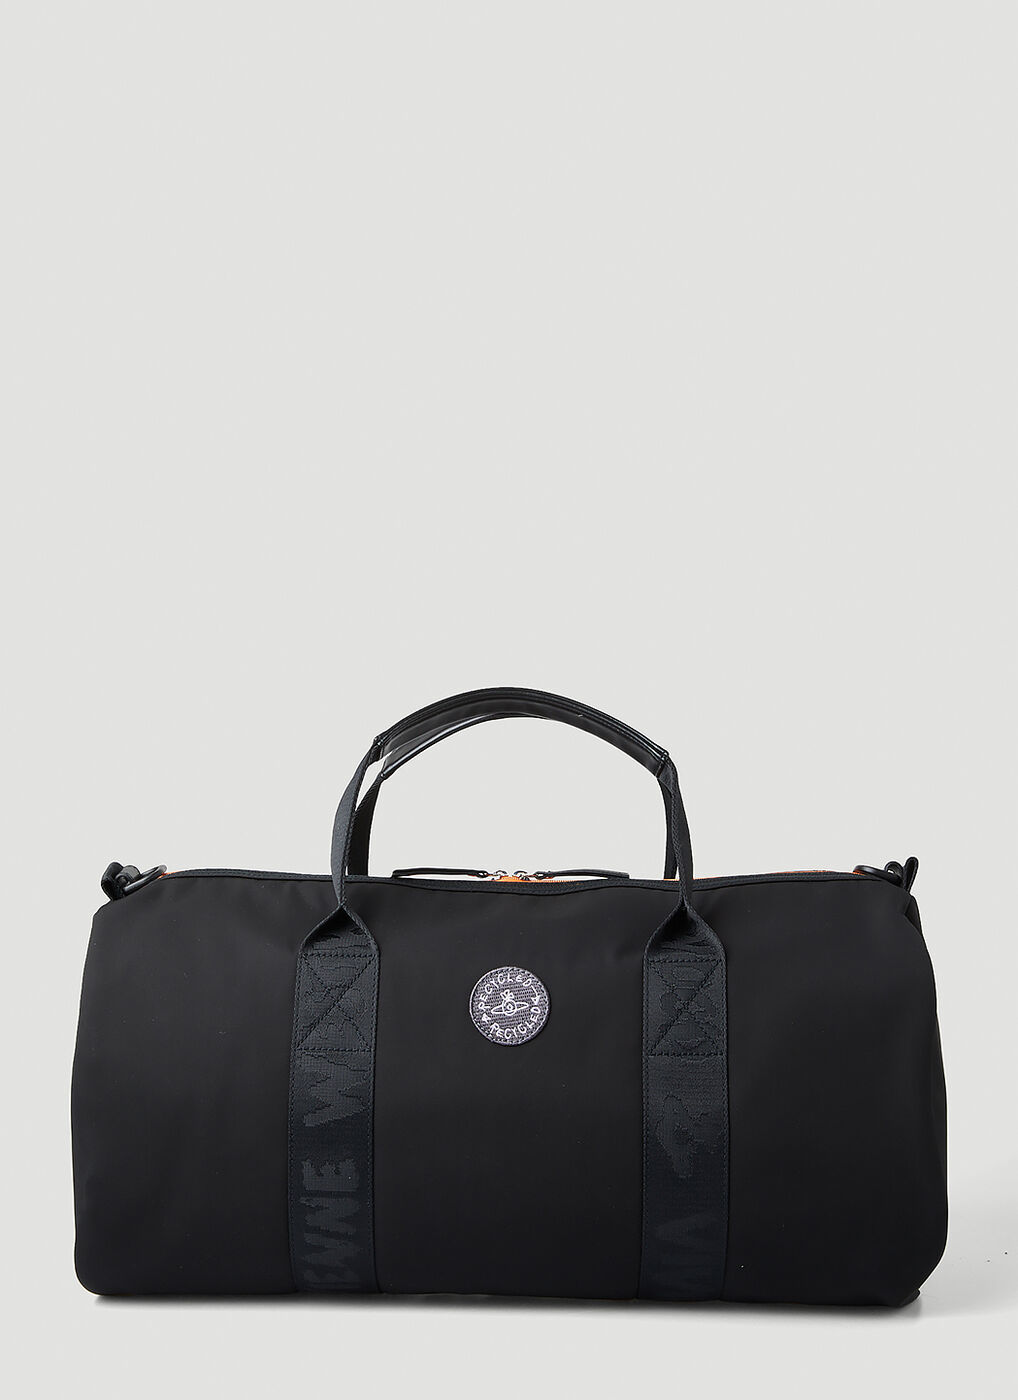 Harry Barrel Shoulder Bag in Black Vivienne Westwood